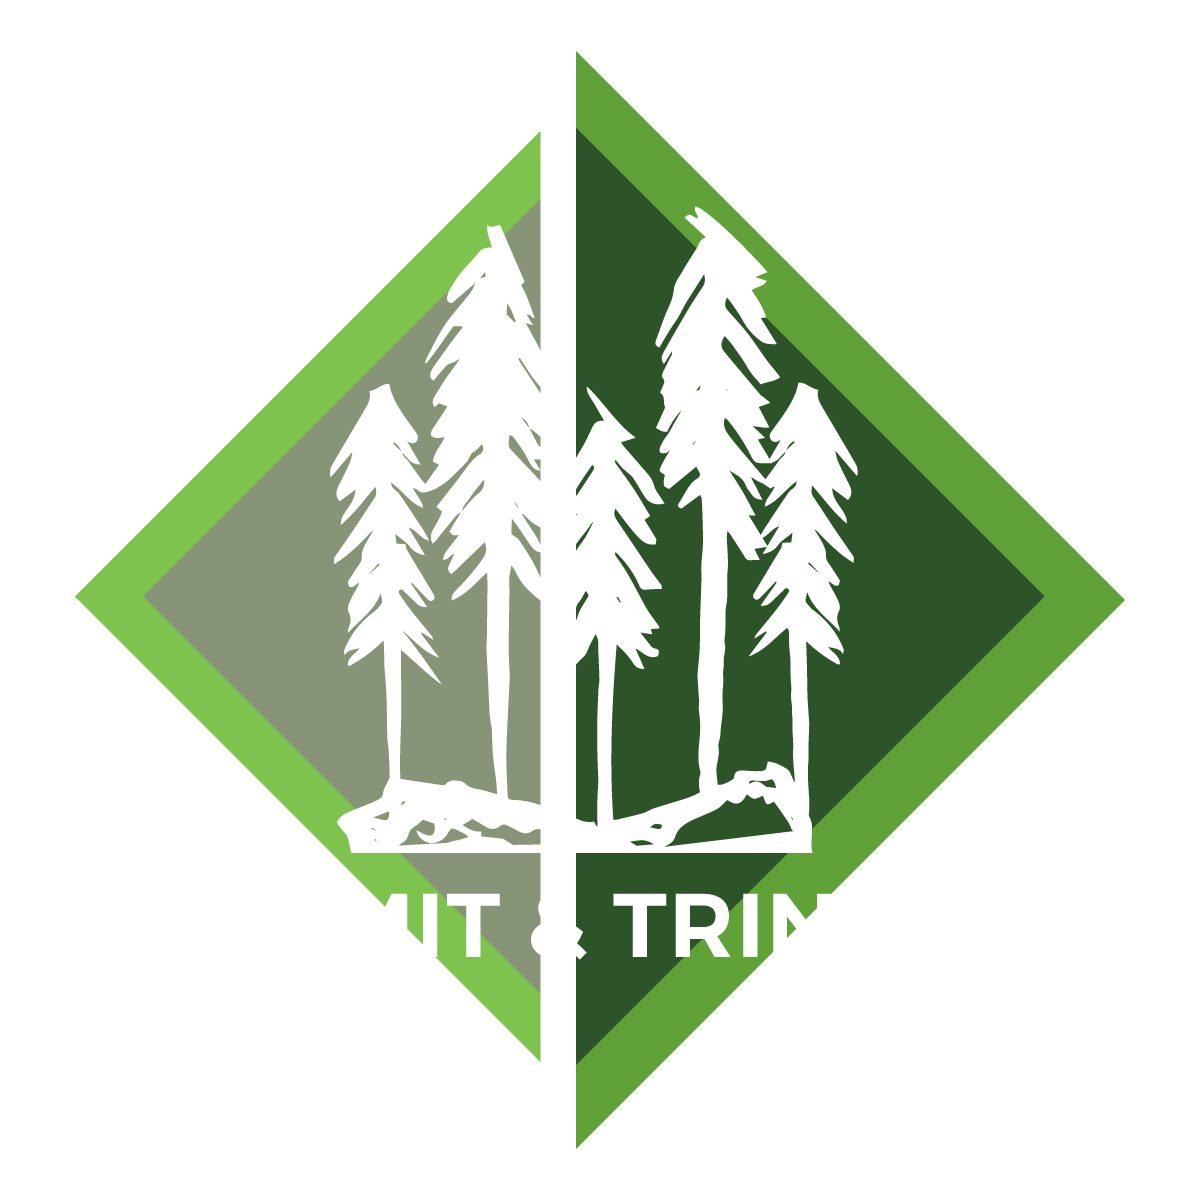 Kermit & Trinity